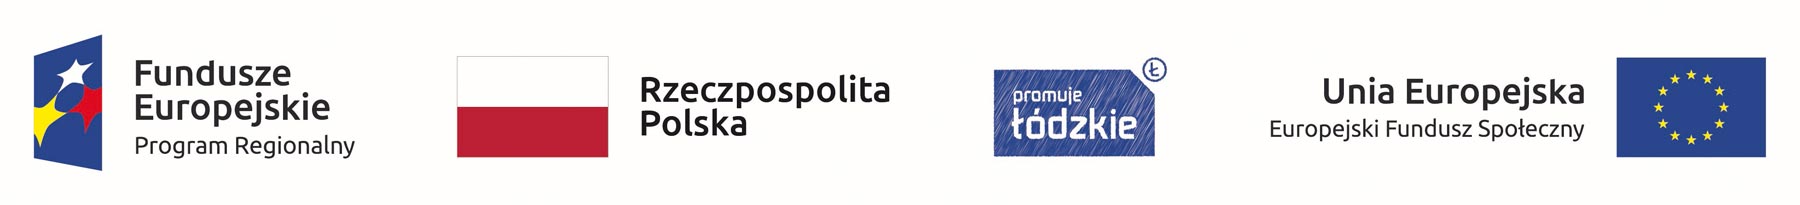 Logotypy: Fundusze Europejskie, Rzeczpospolita Polska, Promuje Łódzkie, Unia Europejska